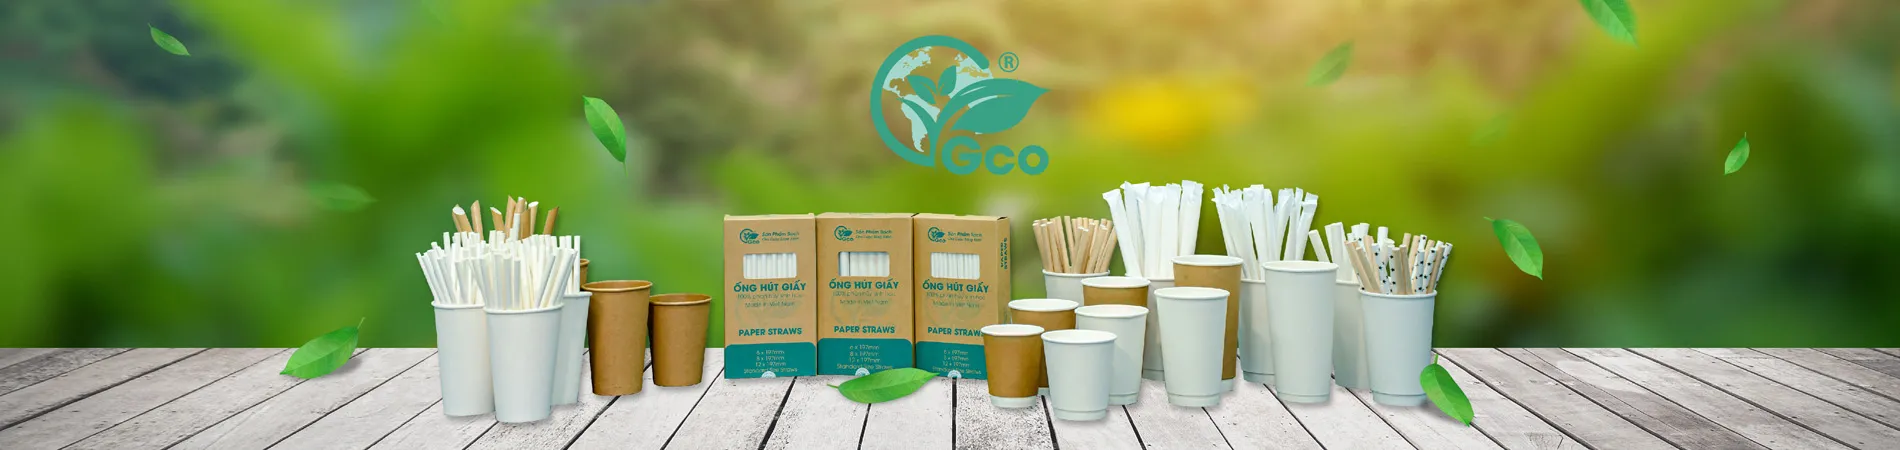 Paper GCO Paper straws, paper cups, paper cups, paper bowls, paper bowls, paper plates